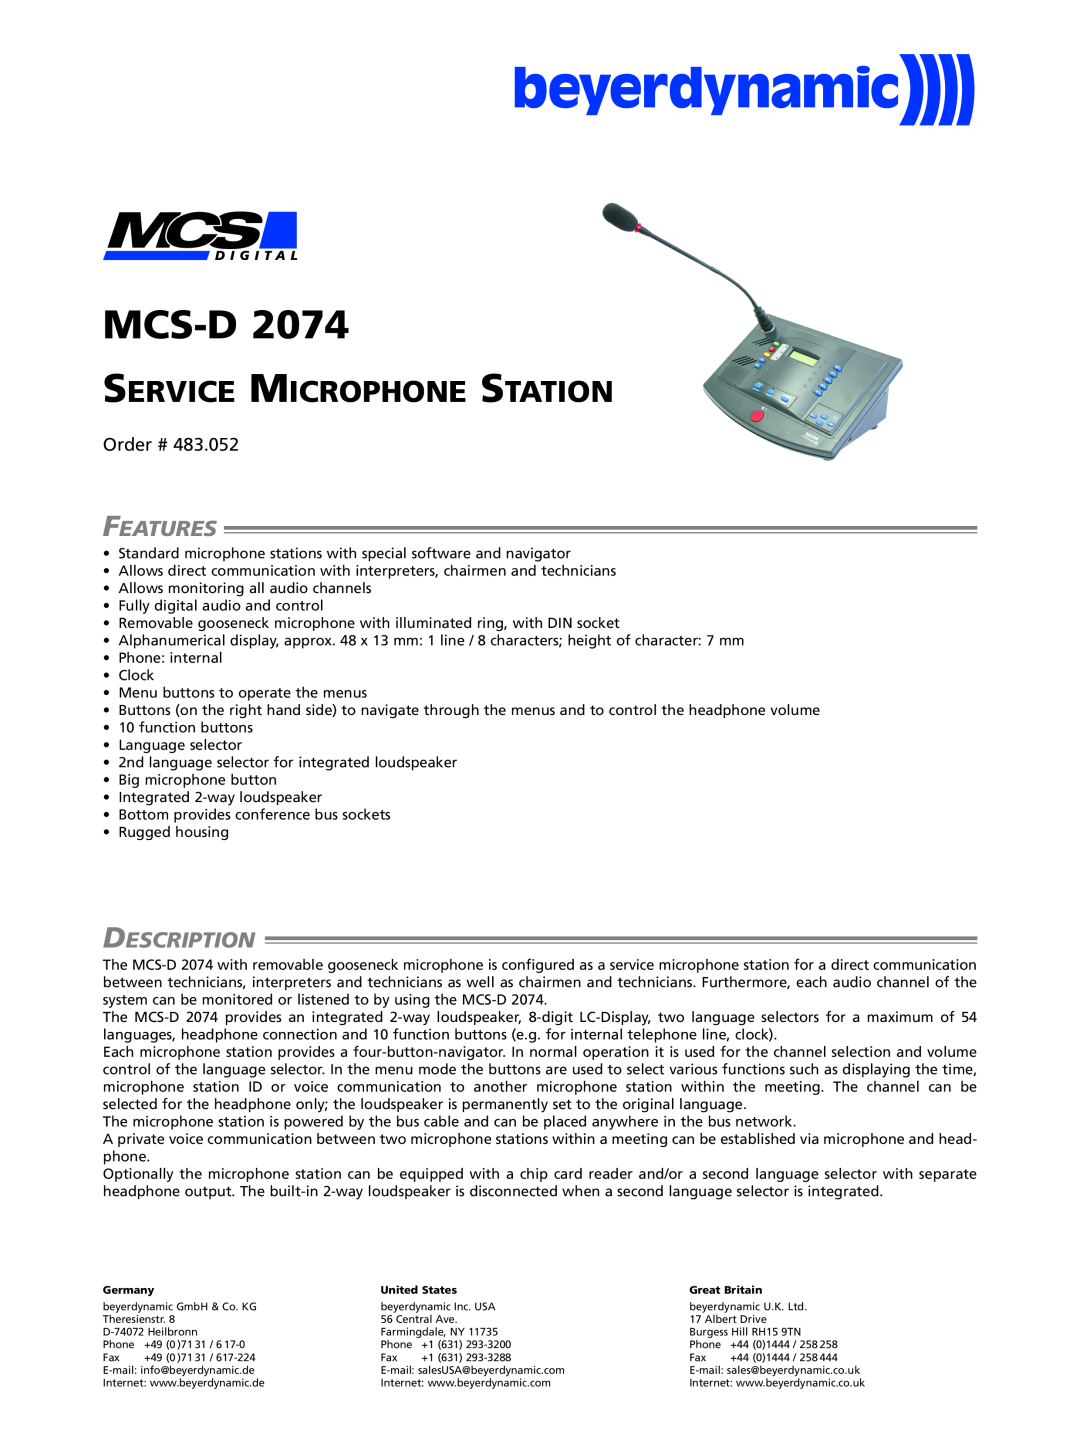 Beyerdynamic MCS-D 2074 manual Features, Description, Mcs-D, Service Microphone Station, Order # 